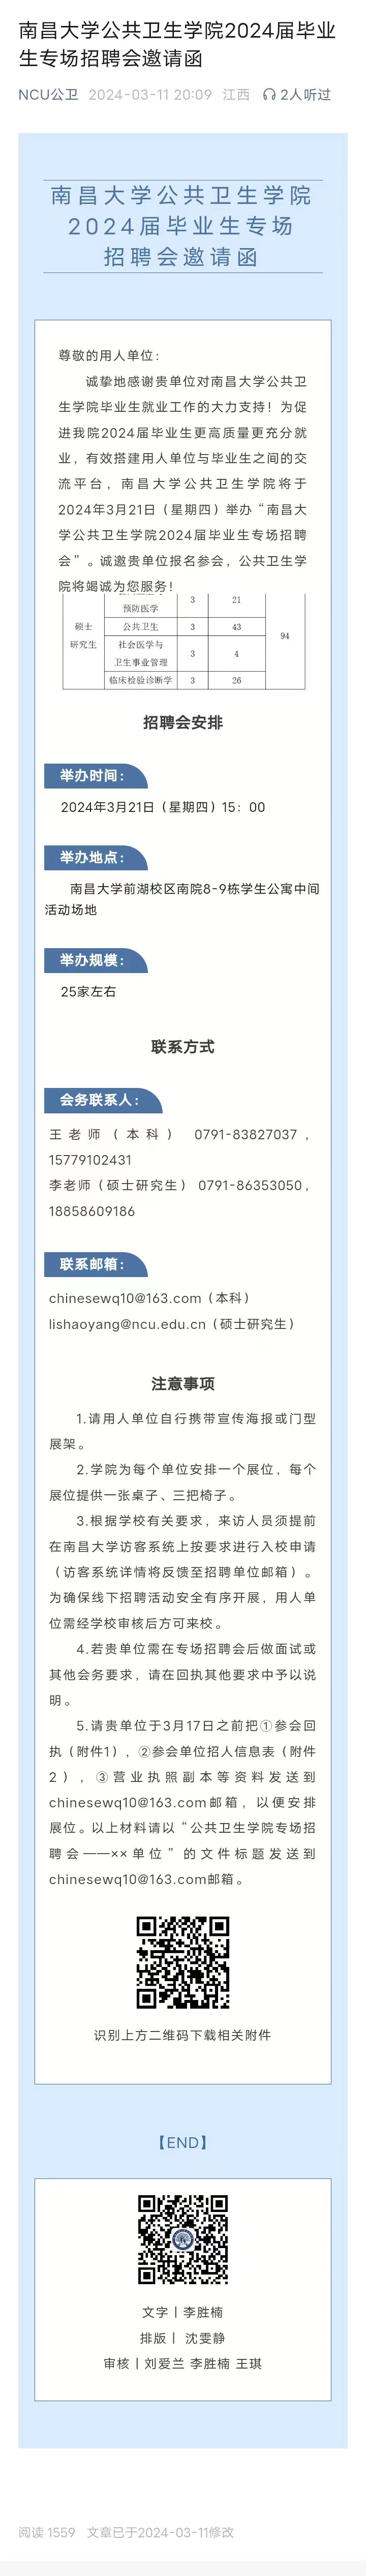 南昌大学公共卫生学院2024届毕业生专场招聘会邀请函